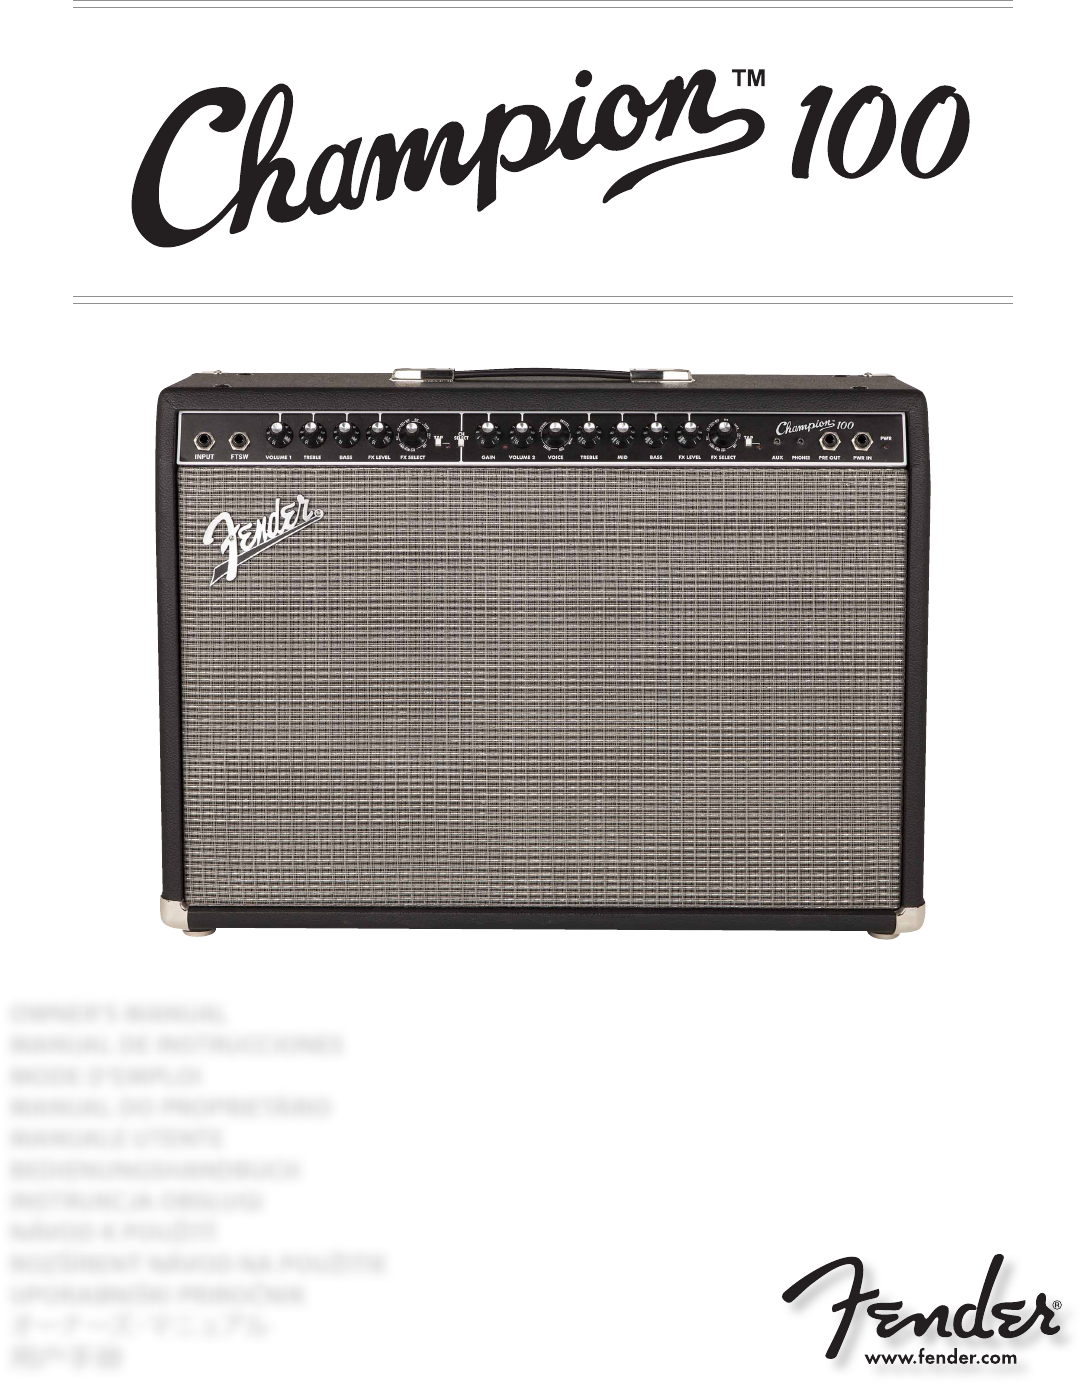 Fender Stereo Champion 100 User Guide |